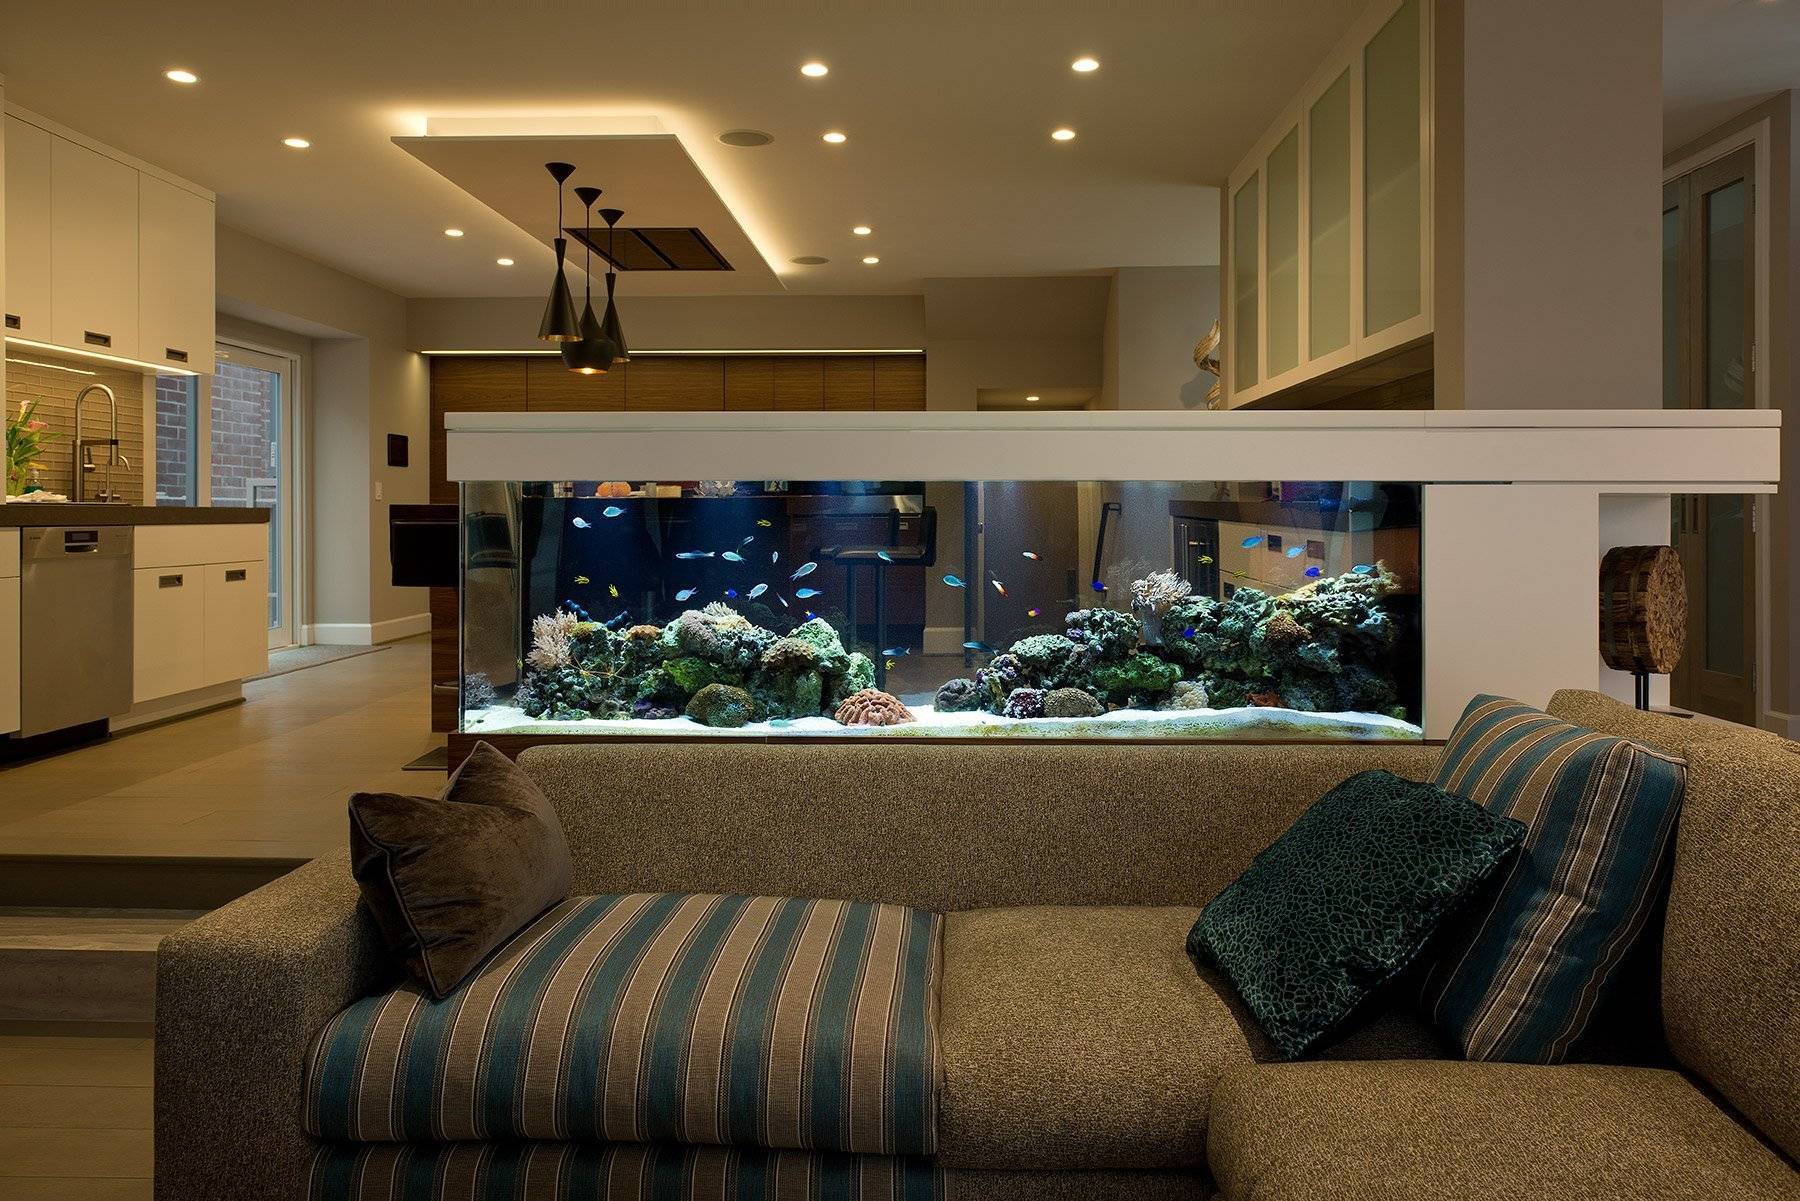 Оформление маленькой гостиной: аквариум в интерьере
оформление маленькой гостиной: аквариум в интерьере